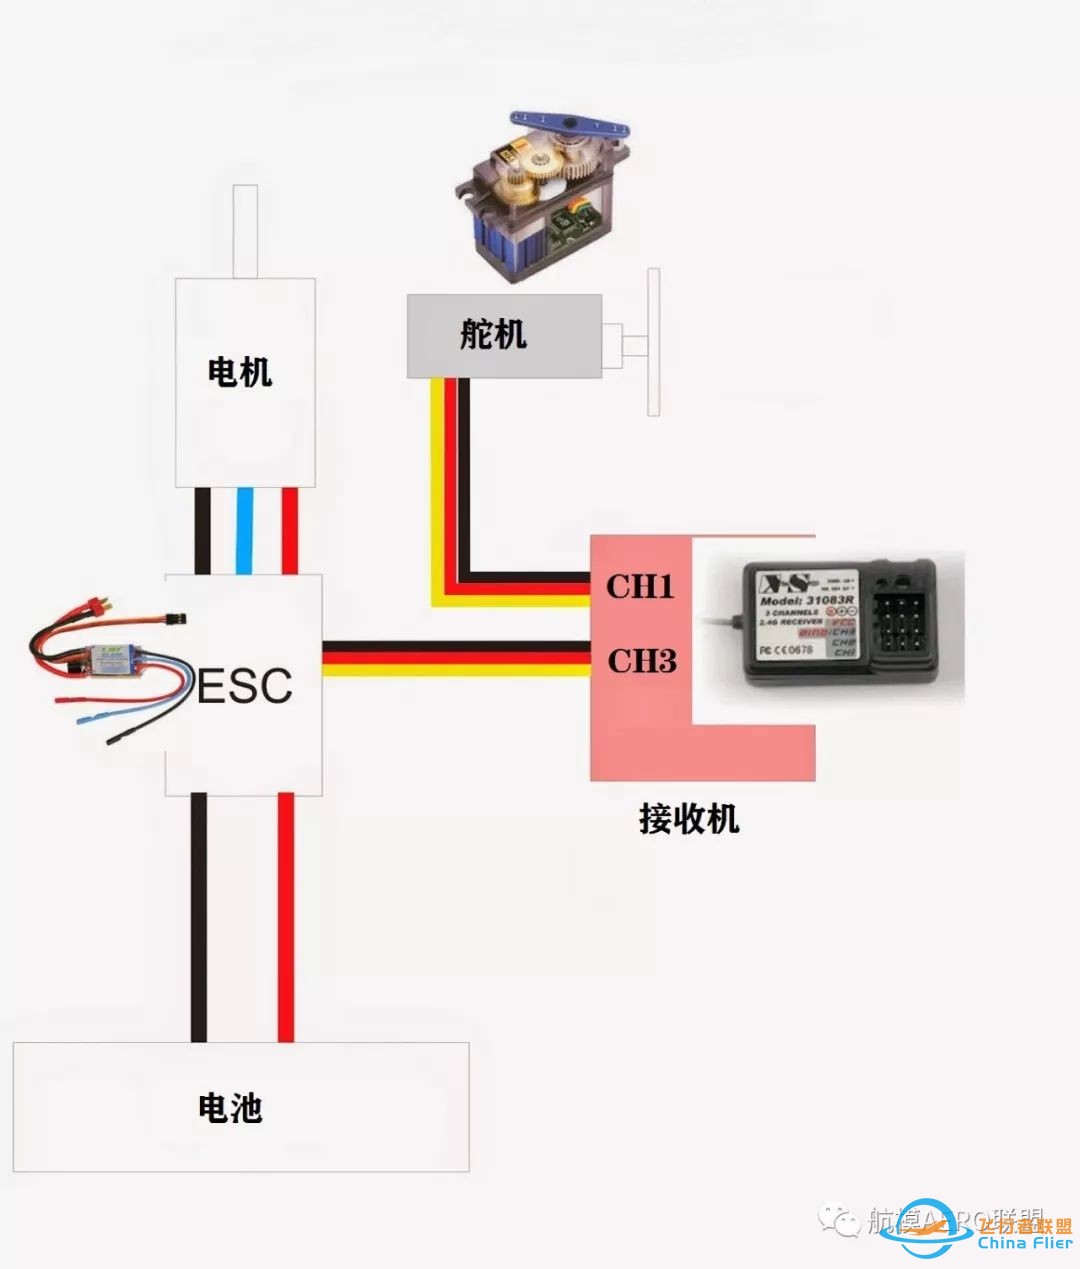 电动模型基础知识讲堂(1)——电机、电调w9.jpg